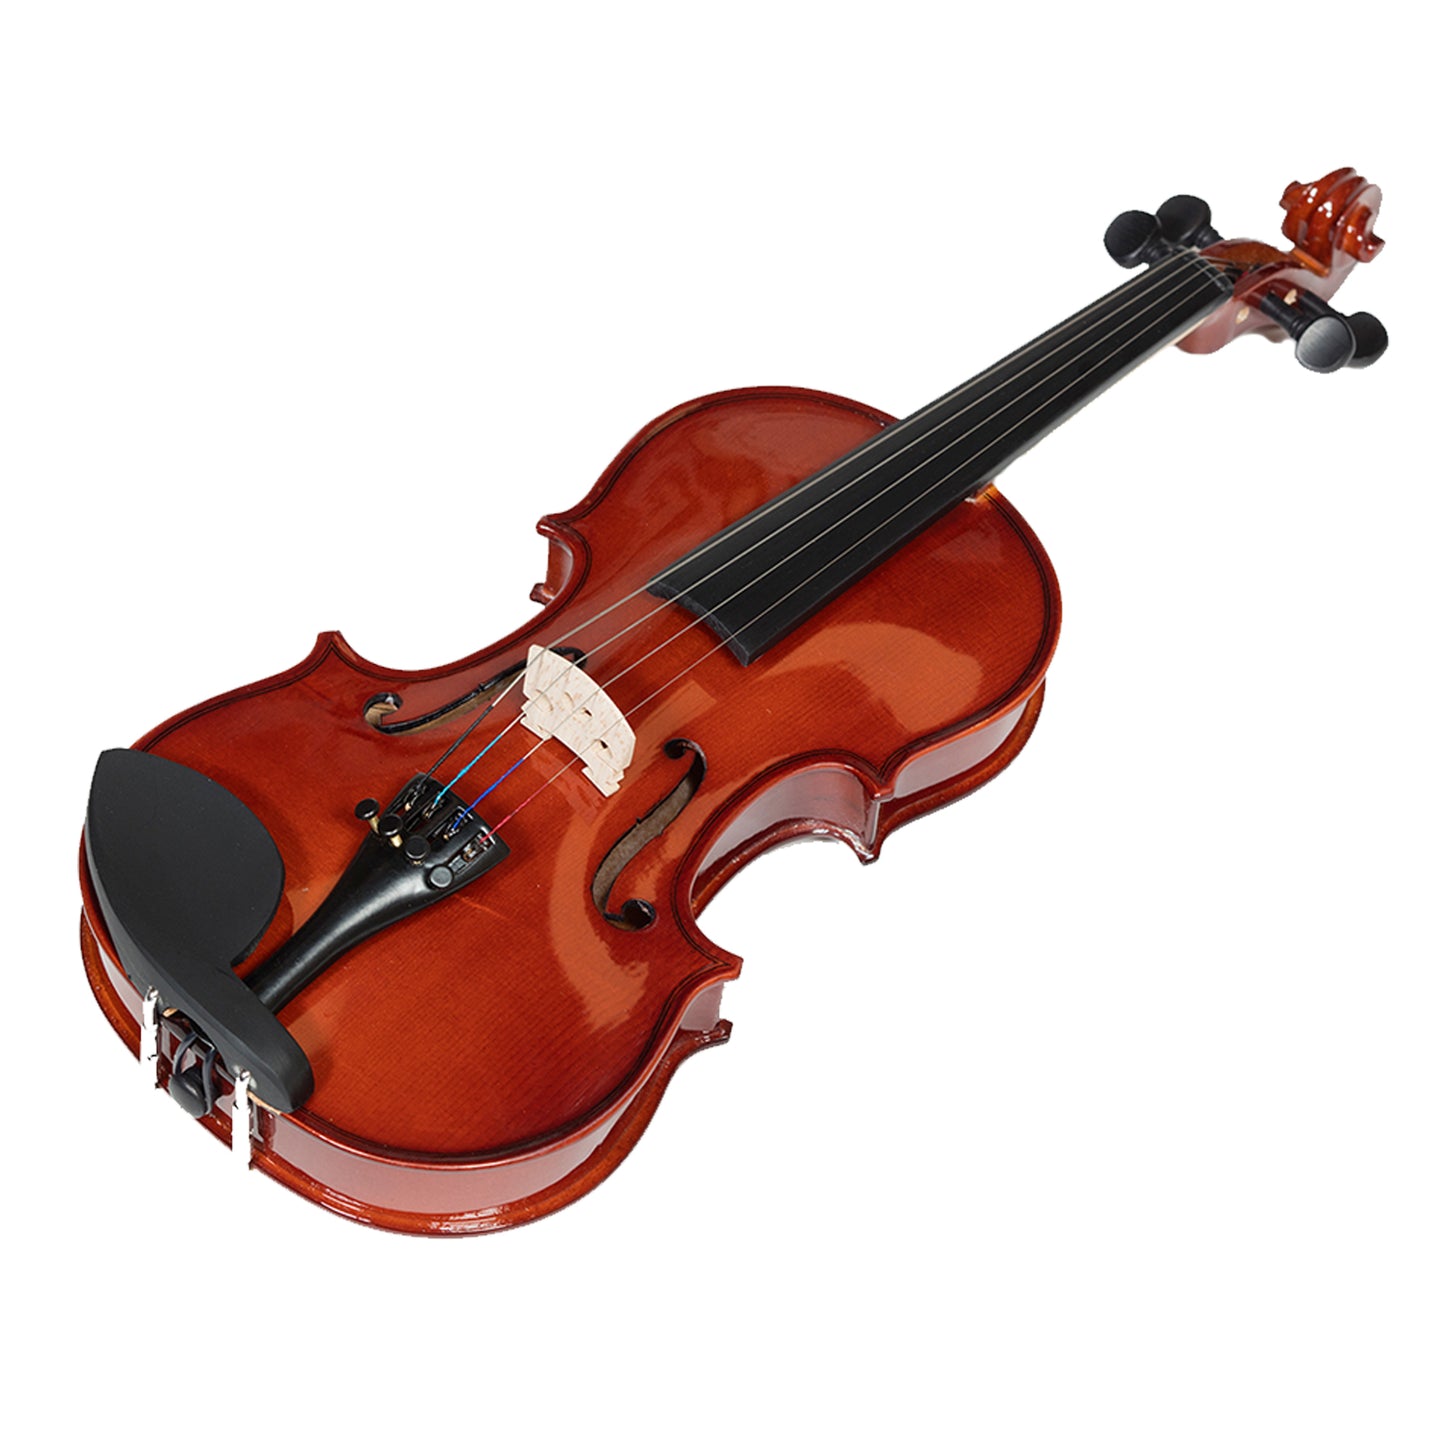 Heartland 1-16 Laminated Student Violin